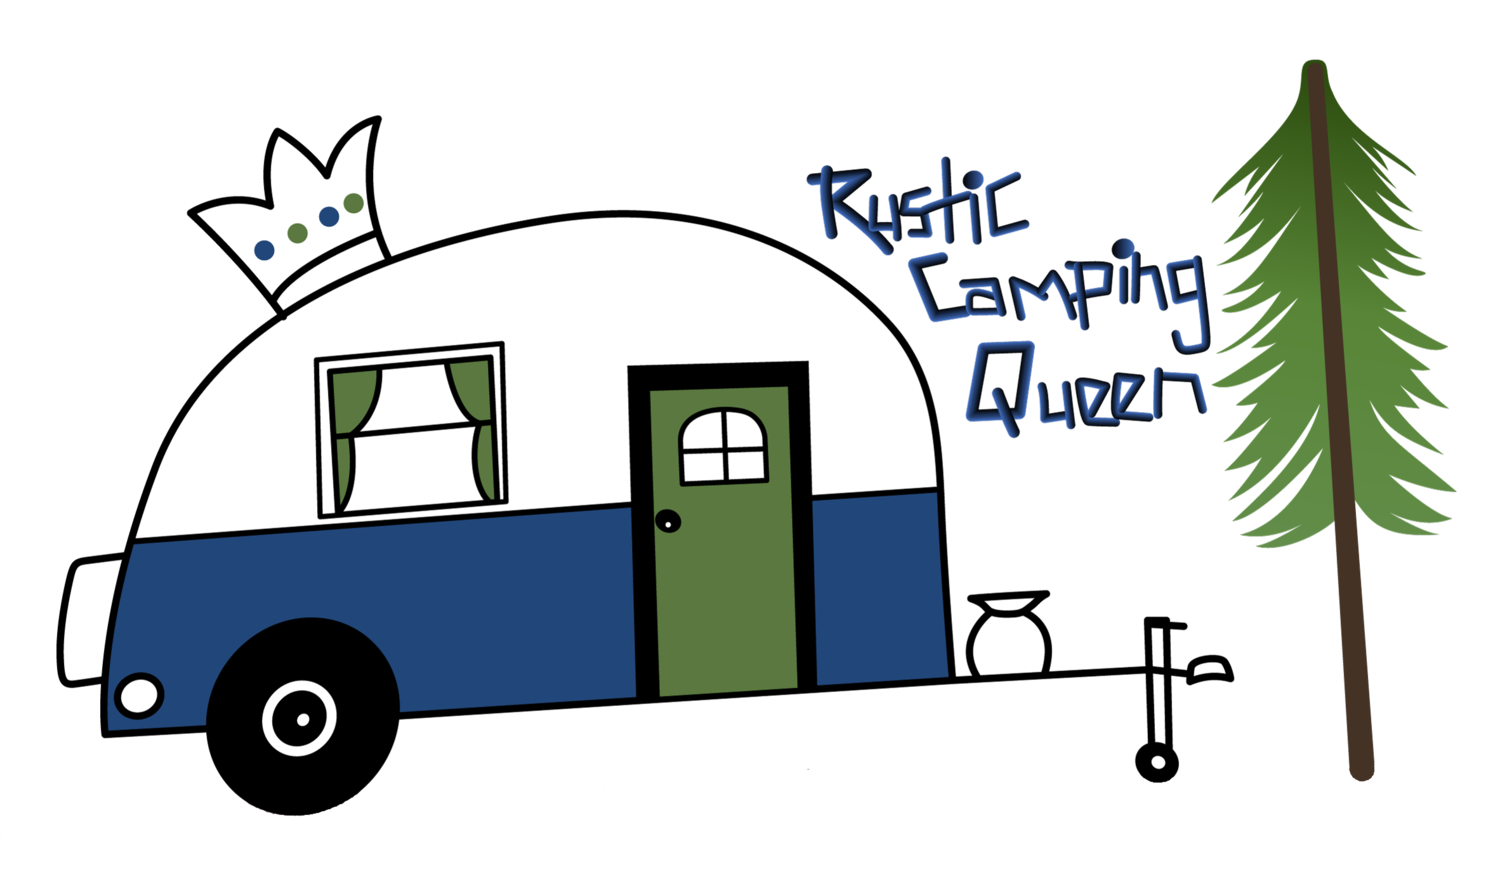 Rustic Camping Queen